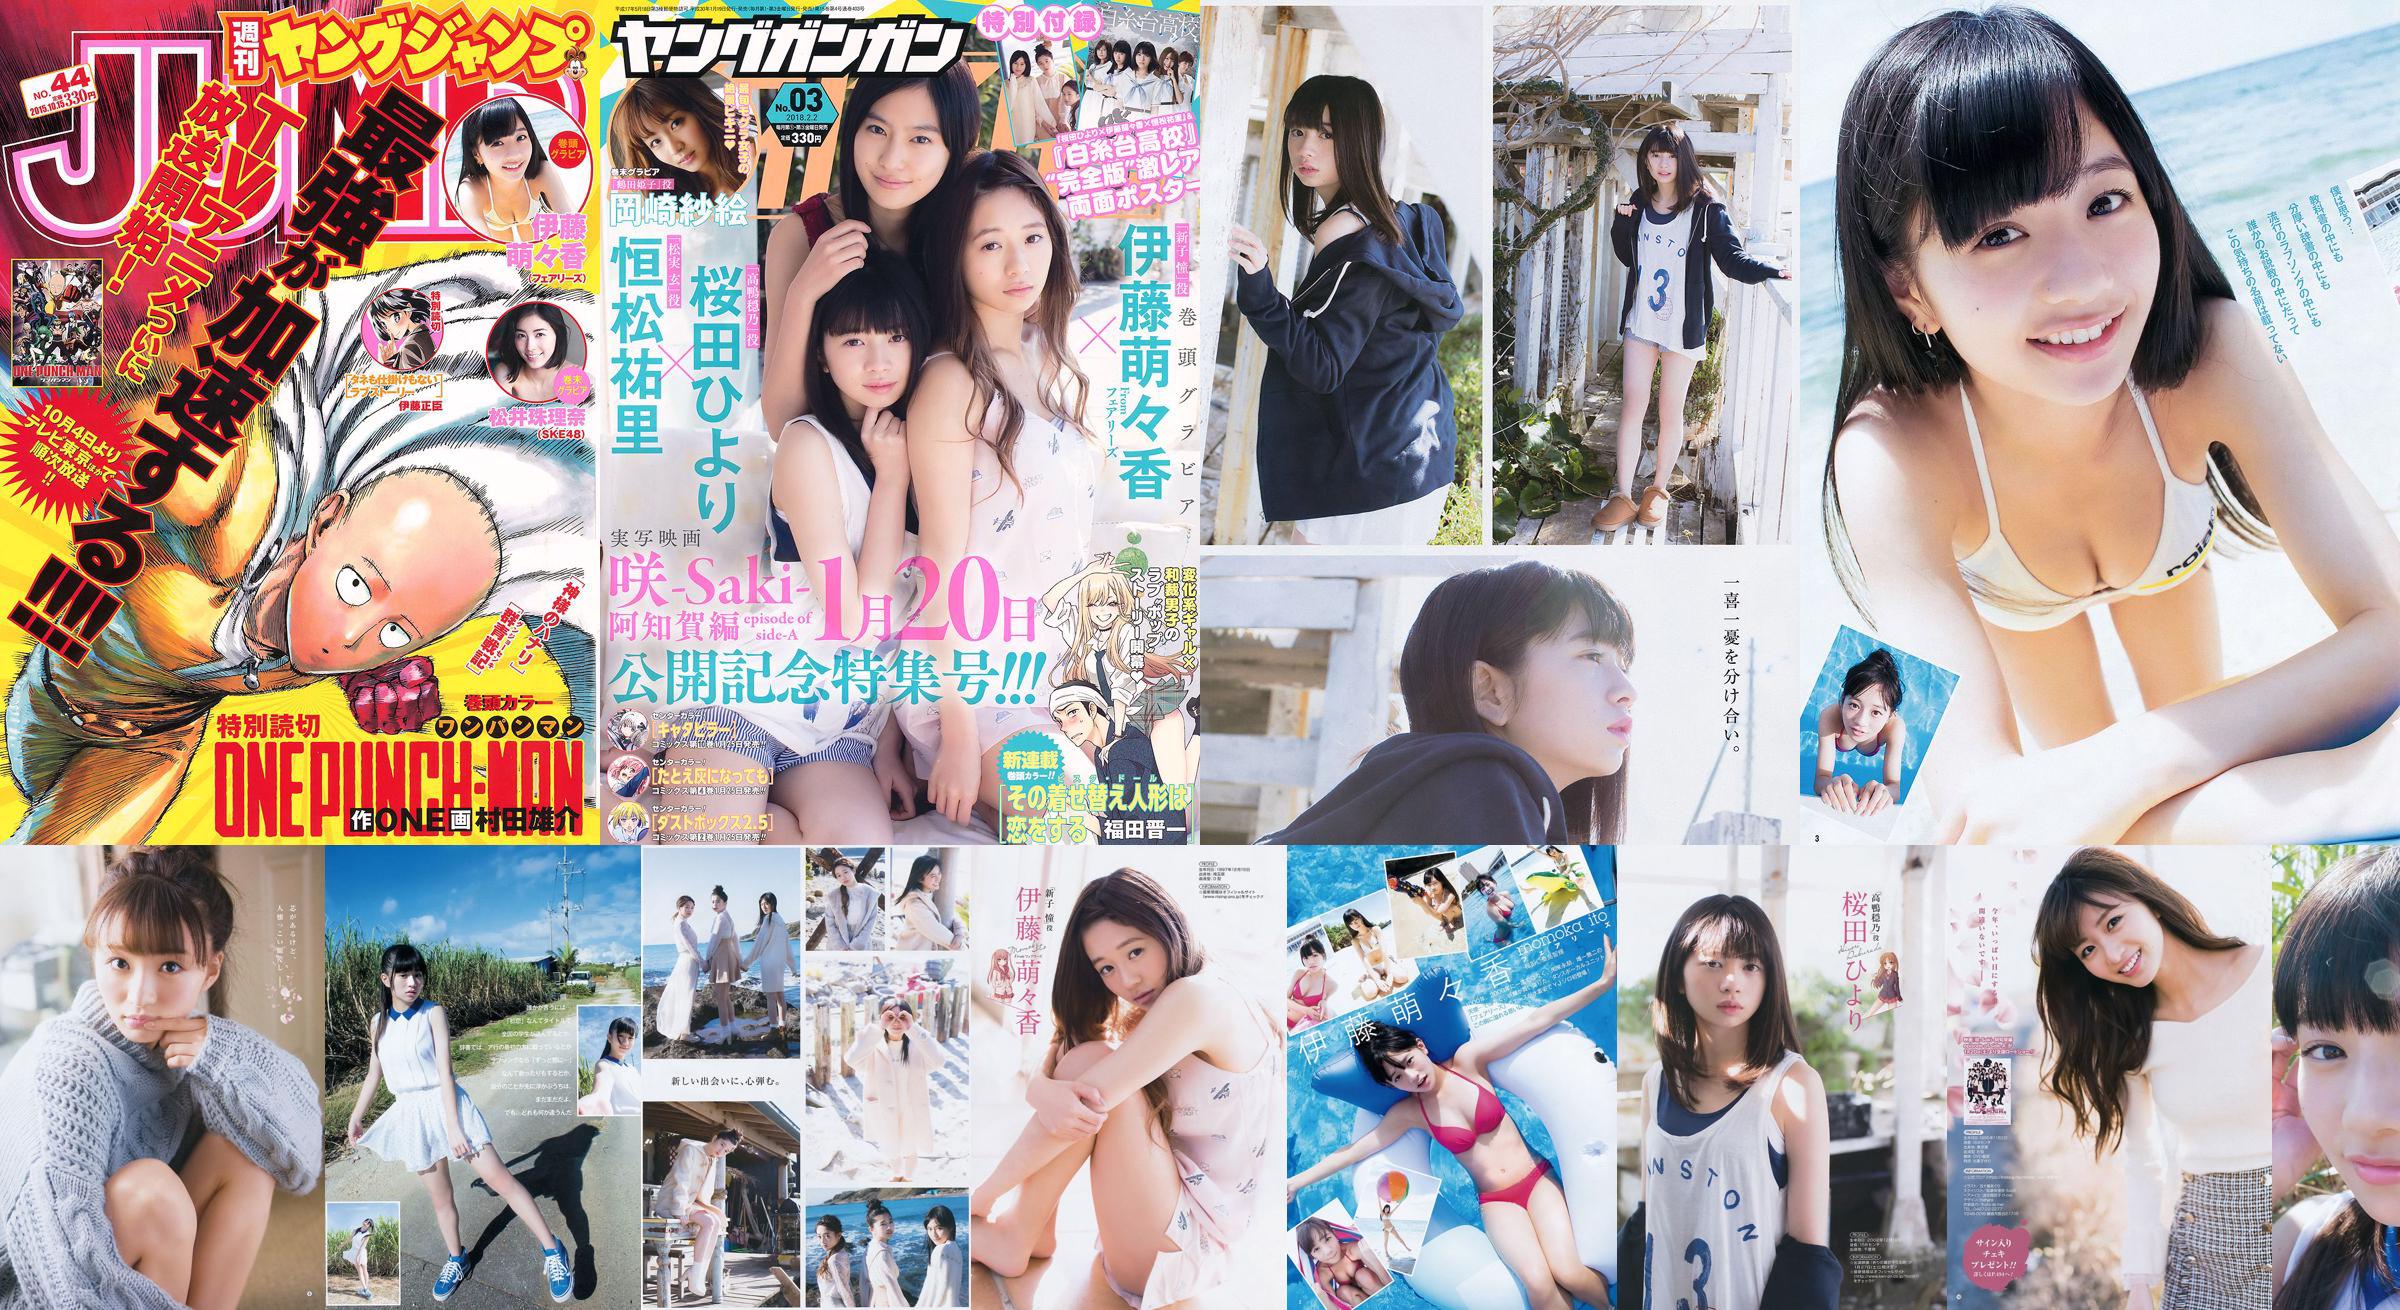 伊藤桃香松井朱里奈 [周刊 Young Jump] 2015 No.44 照片 No.edcfc5 第1頁